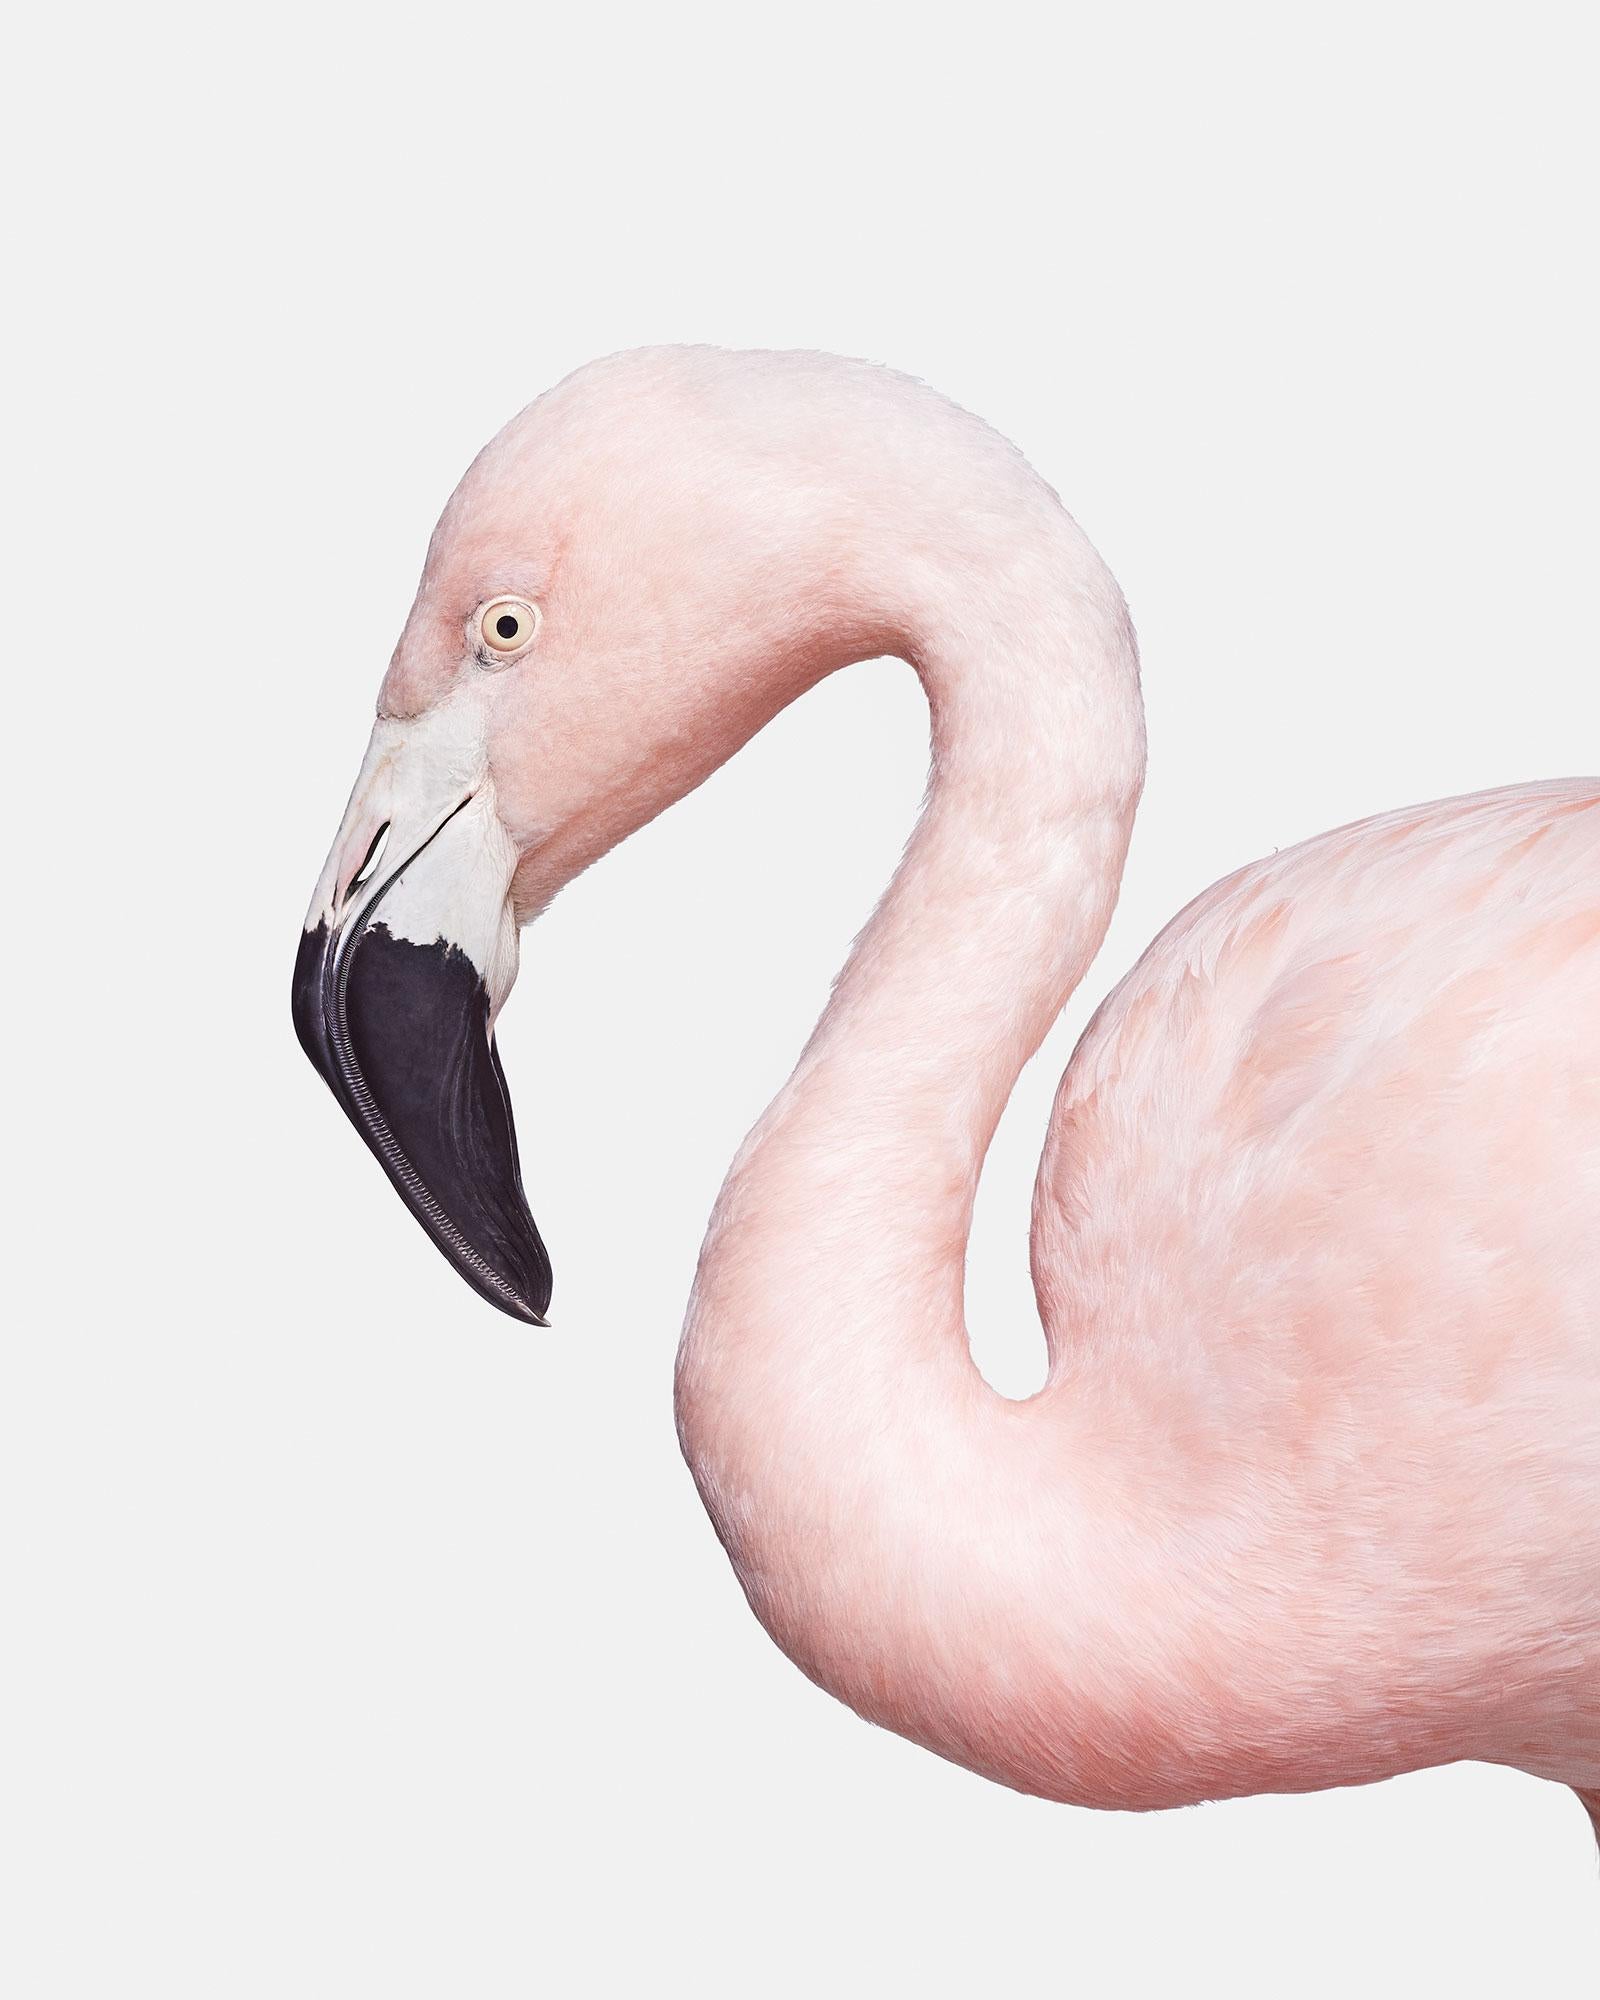 Randal Ford Animal Print - Flamingo No. 1 (37.5" x 30")